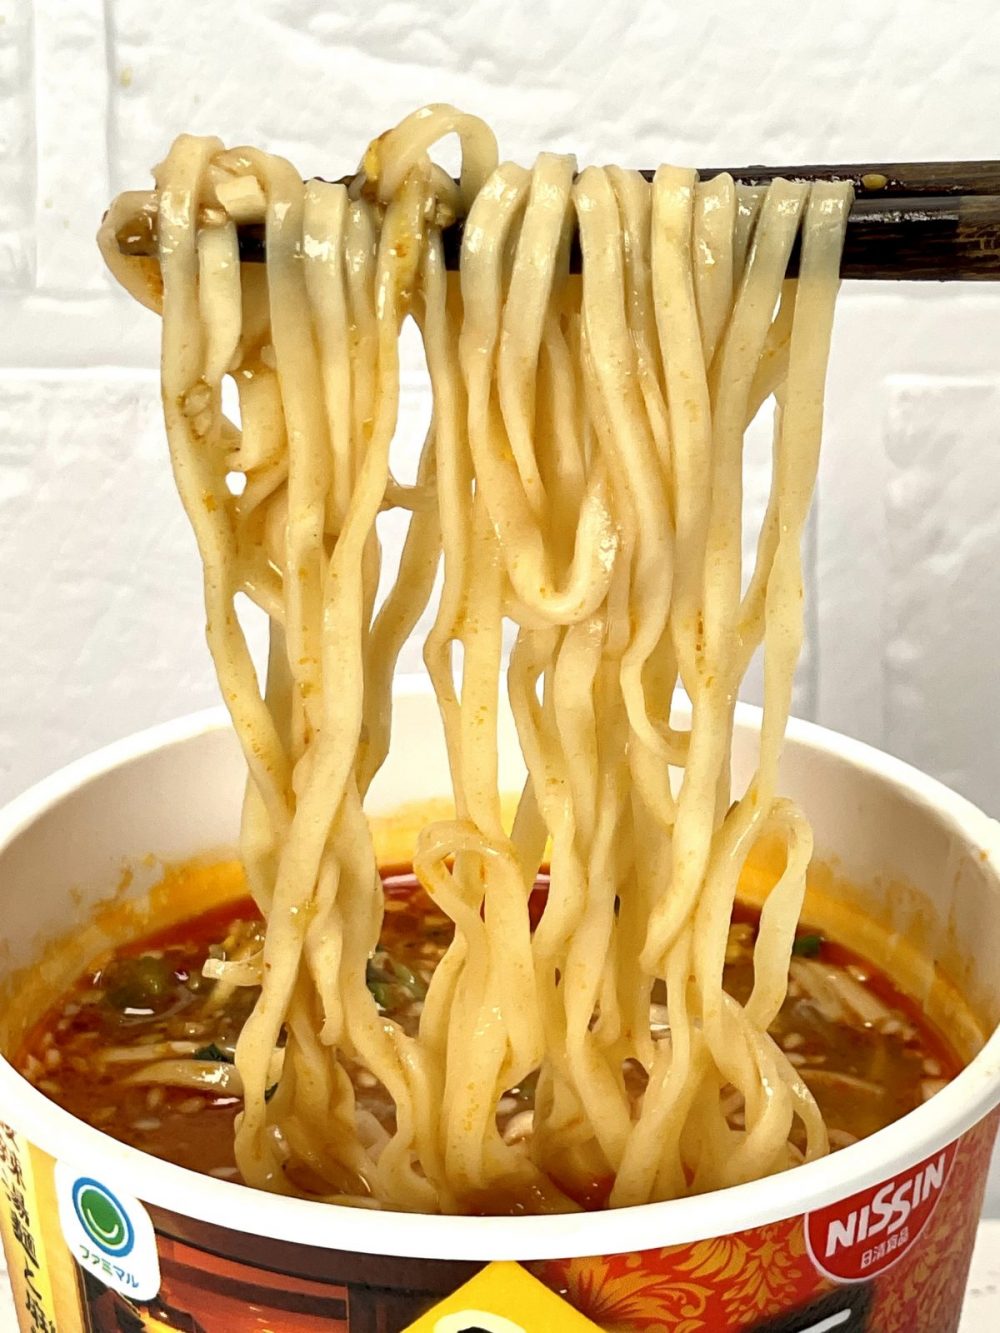 1.「ファミマル 三宝亭咖哩担々麺」（日清食品）平打ち系のほぼストレート麺は、とろみのあるスープとの絡みもバツグンです